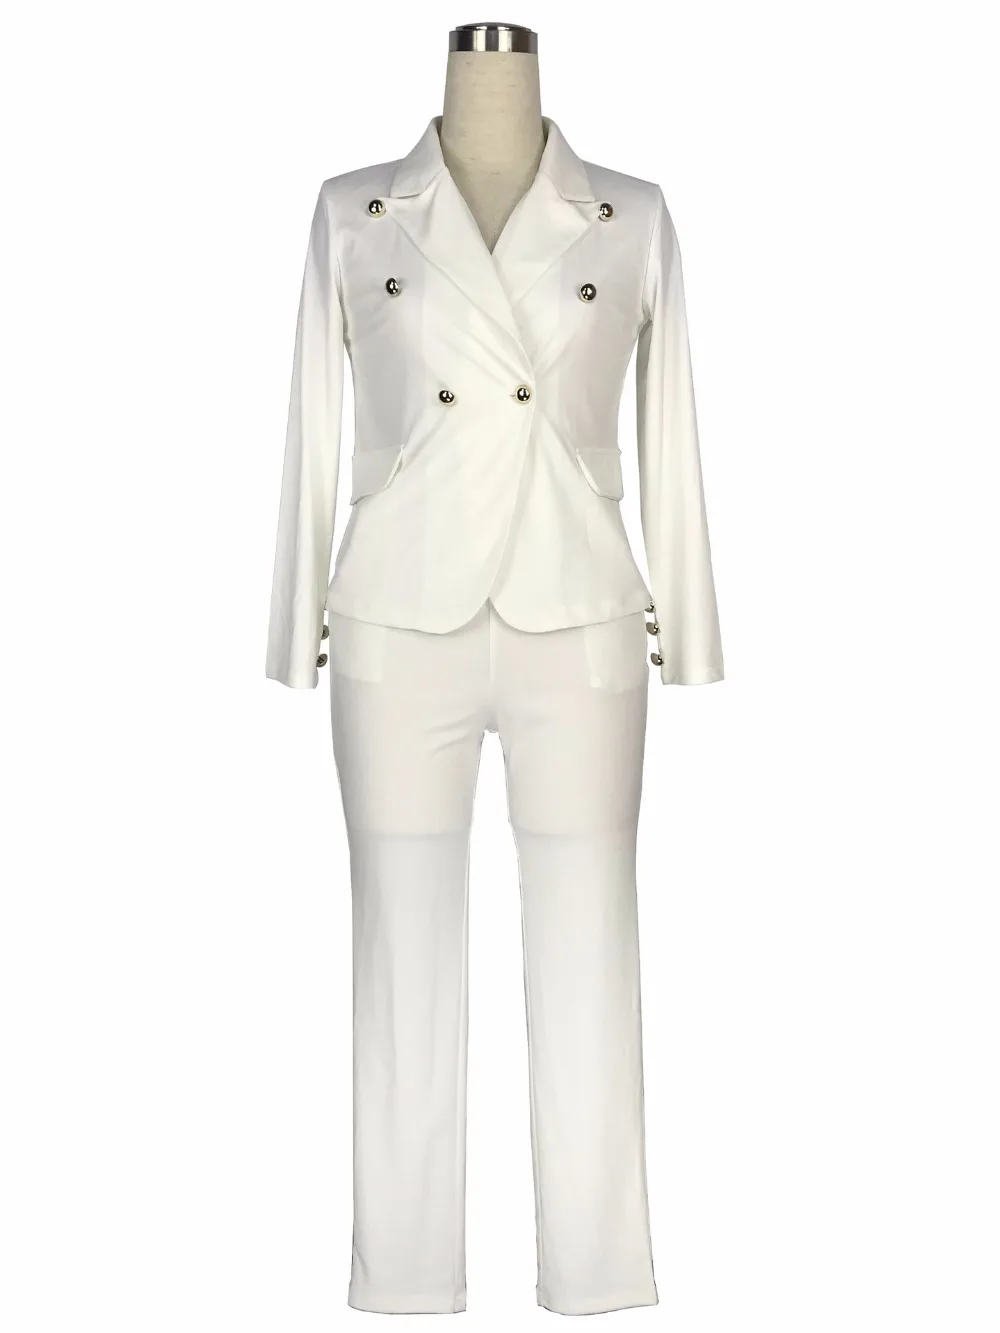 2019 Work Pant Suit OL 2 Piece Set for Women Business Interview Suit Set Uniform Blazer Pencil Pant Office Lady Suit Black White